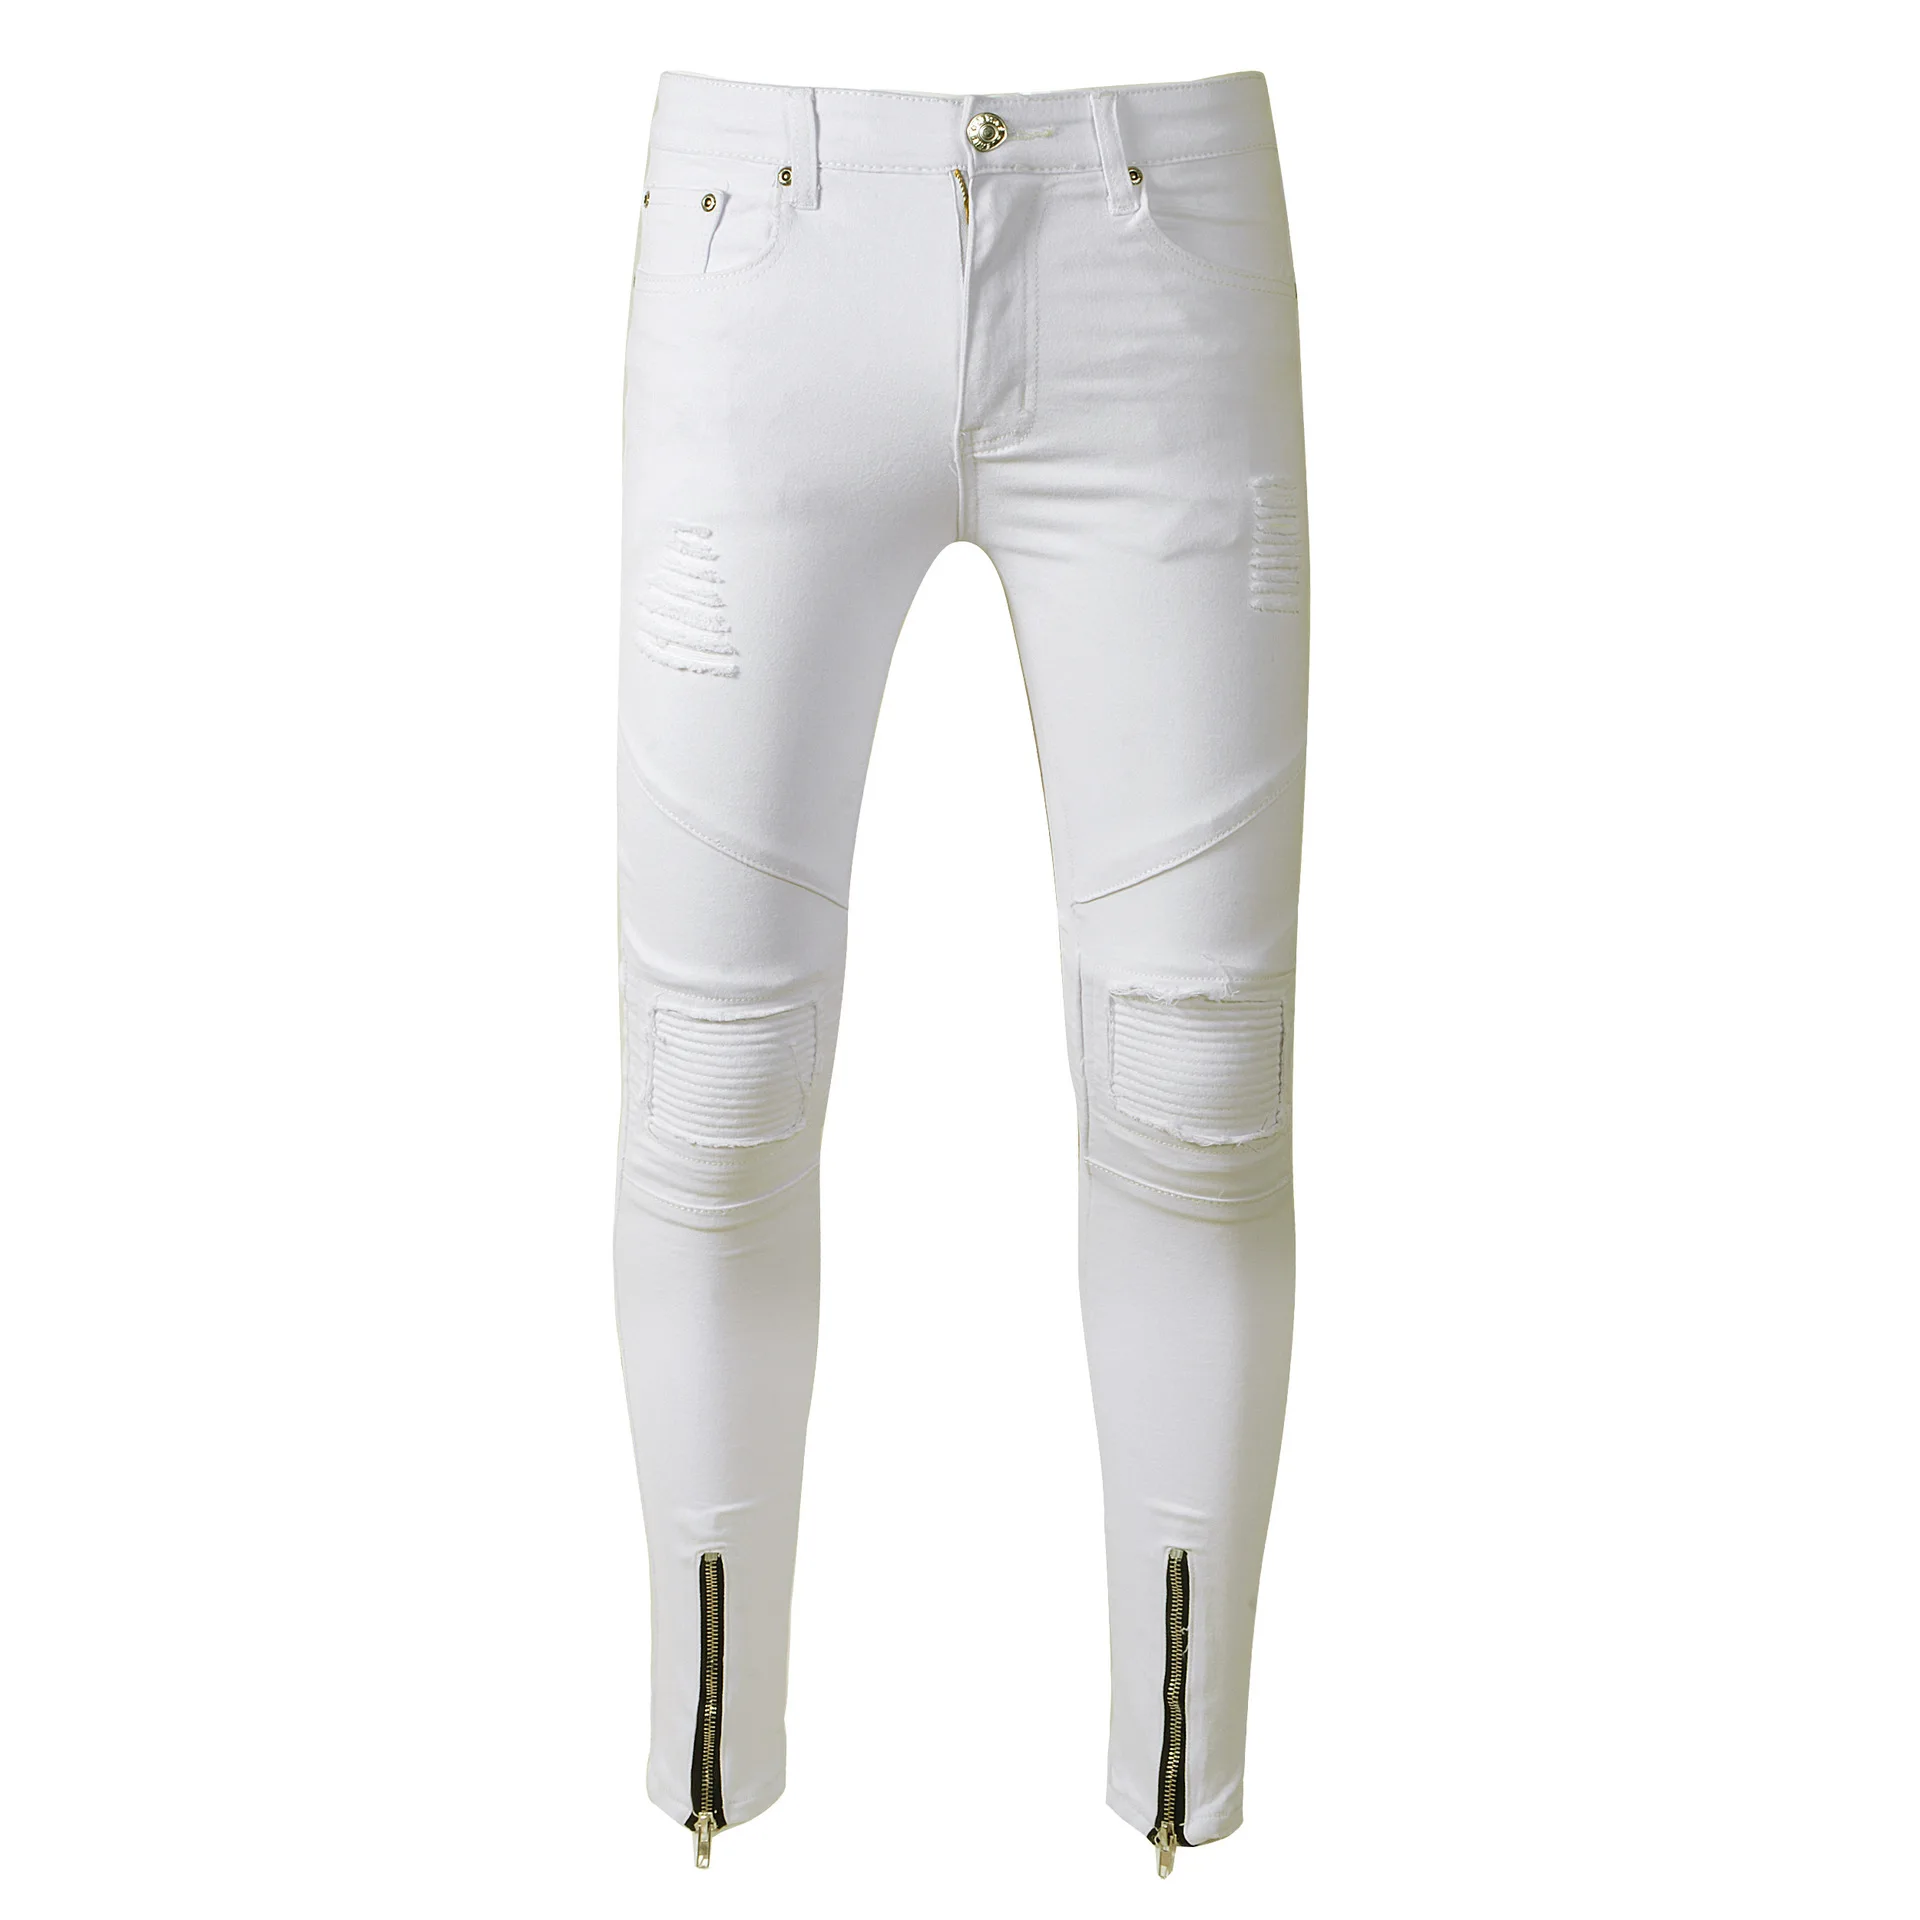 Новый Для мужчин джинсы моды мыть рваные блестящие джинсовые штаны хип-хоп Уличная упругие белые брюки карандаш с молнией